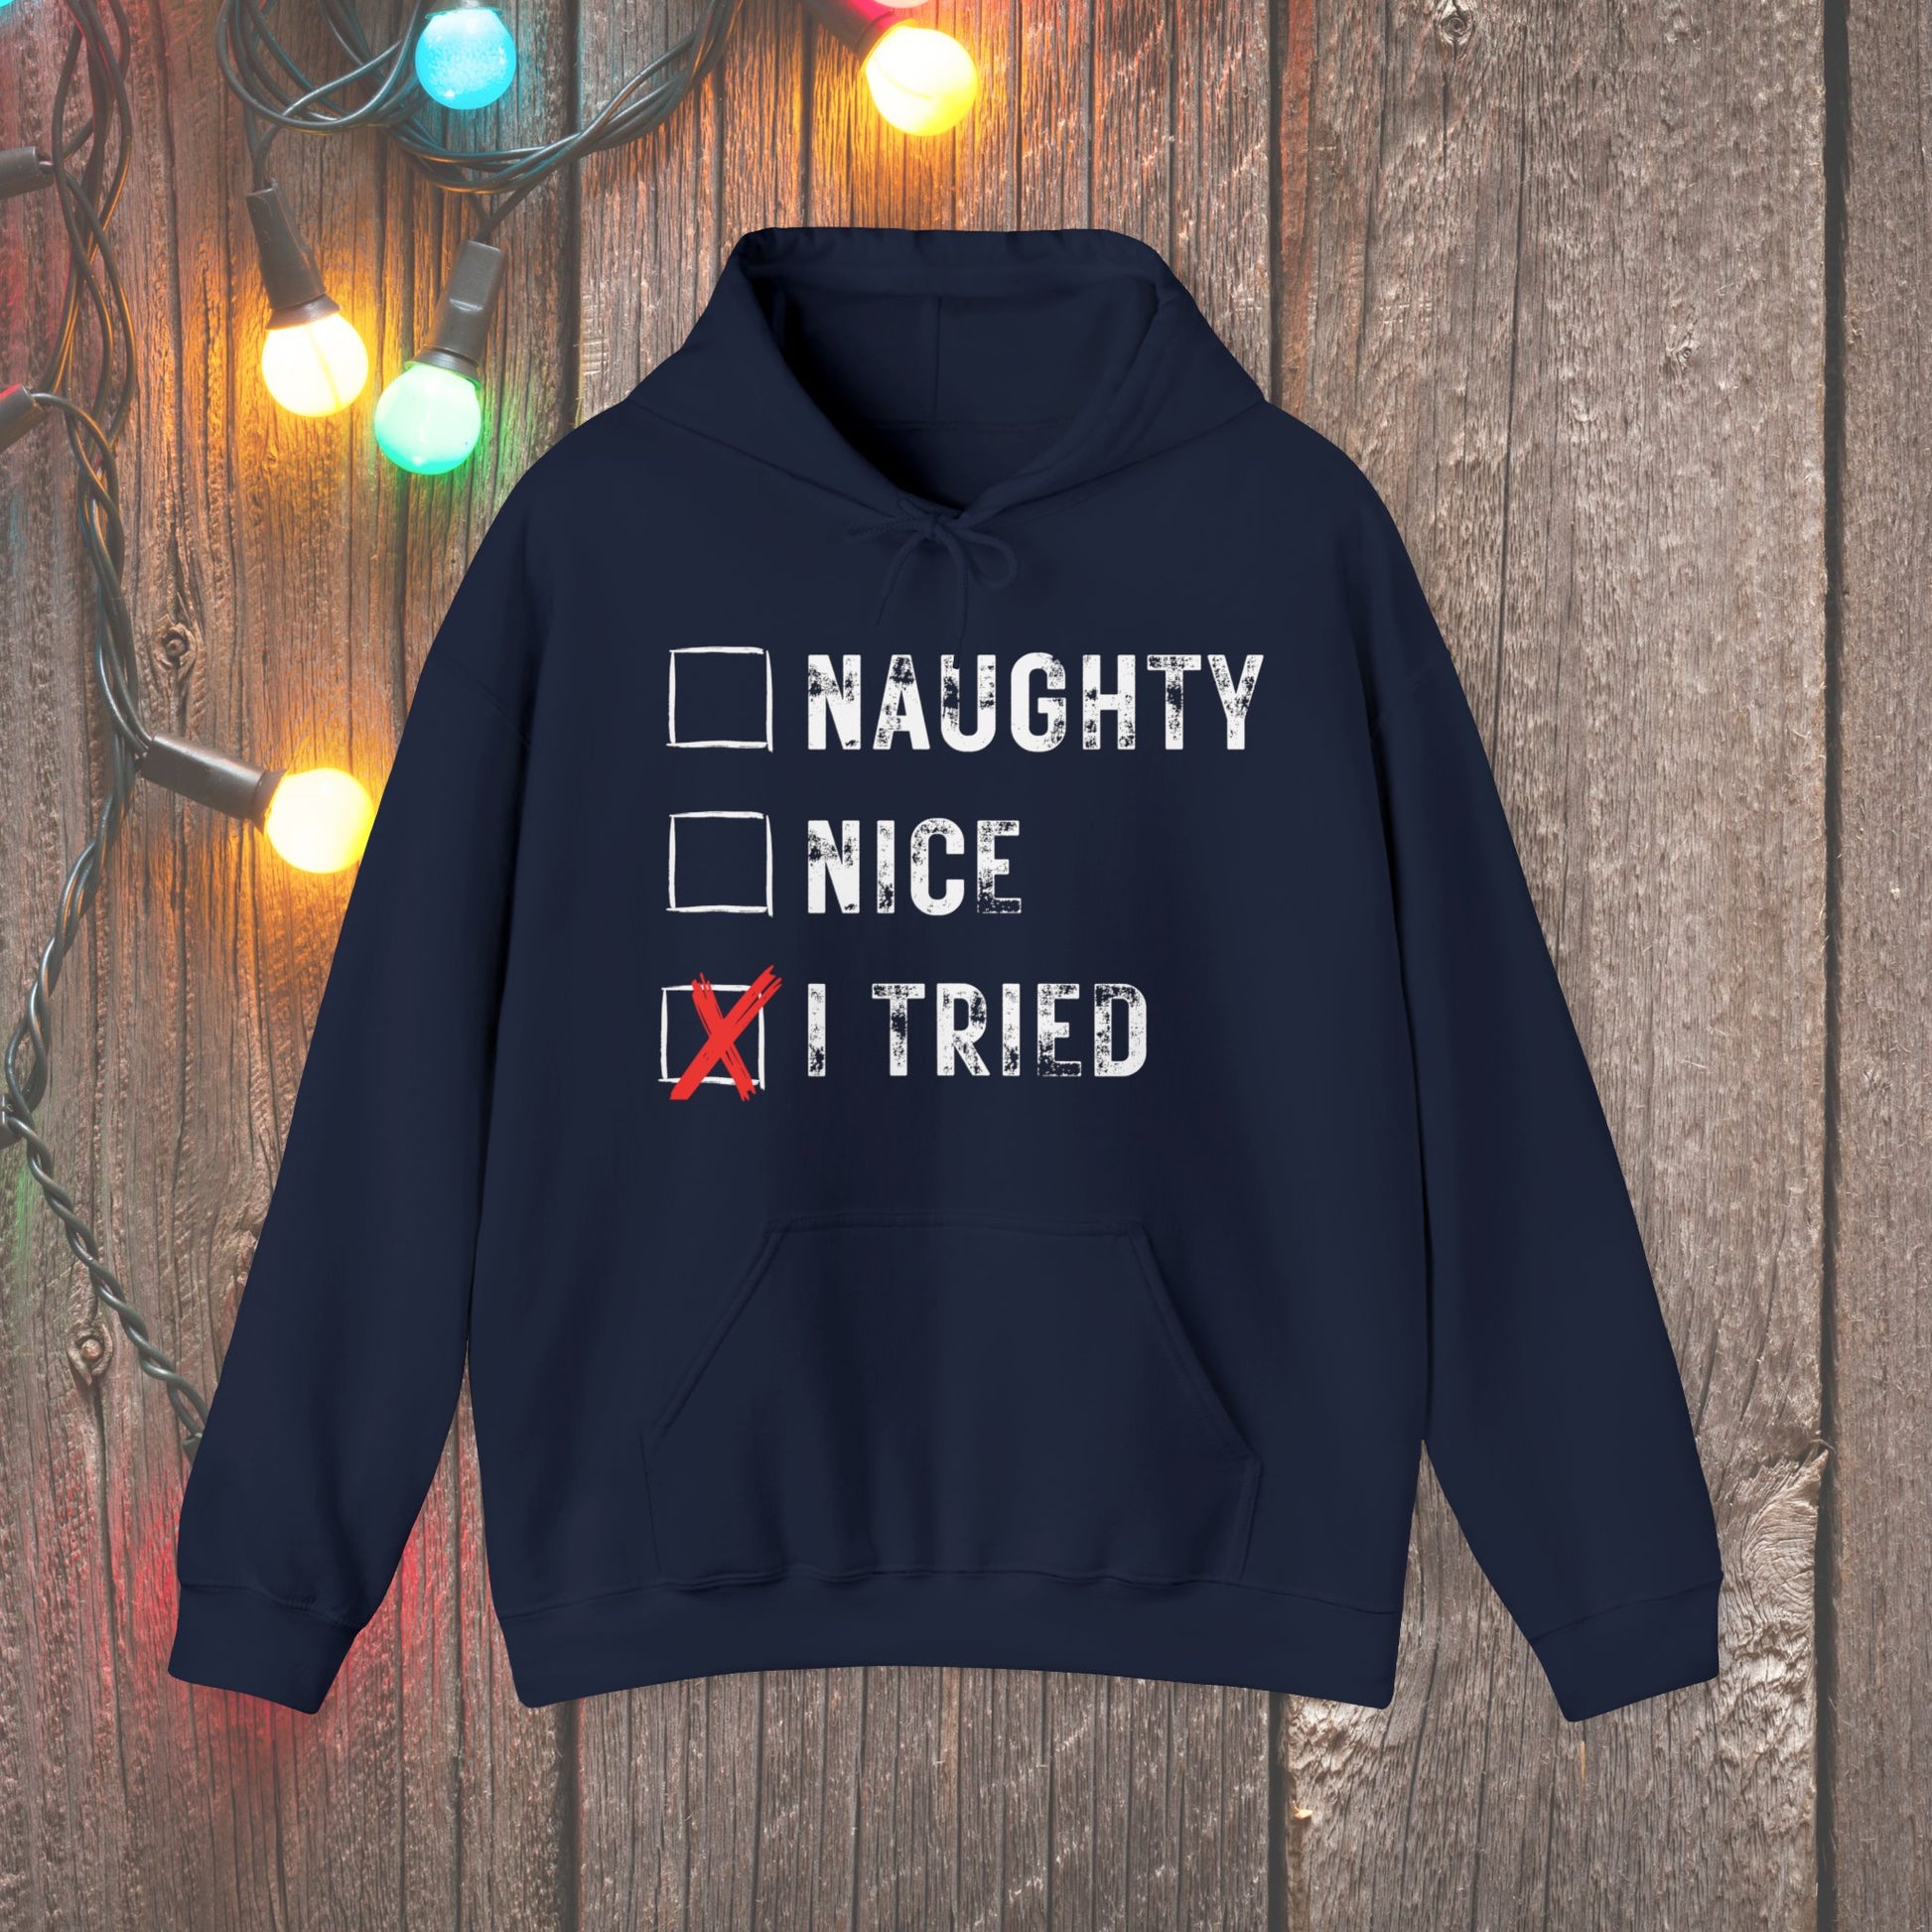 Christmas Hoodie - Naughty Nice I Tried - Mens Christmas Shirts - Youth and Adult Christmas Hooded Sweatshirt Hooded Sweatshirt Graphic Avenue Navy Adult Small 